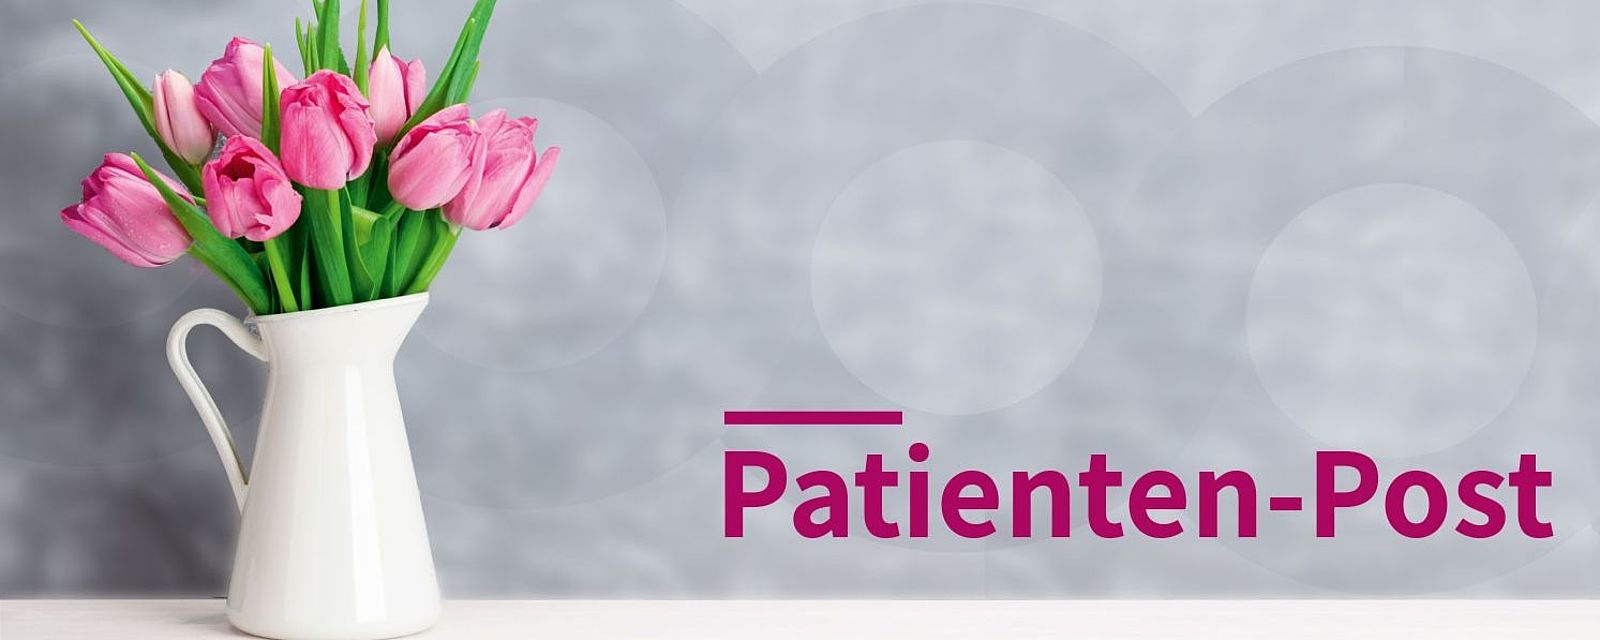 Symbolbild mit Blumen für Patienten-Post 